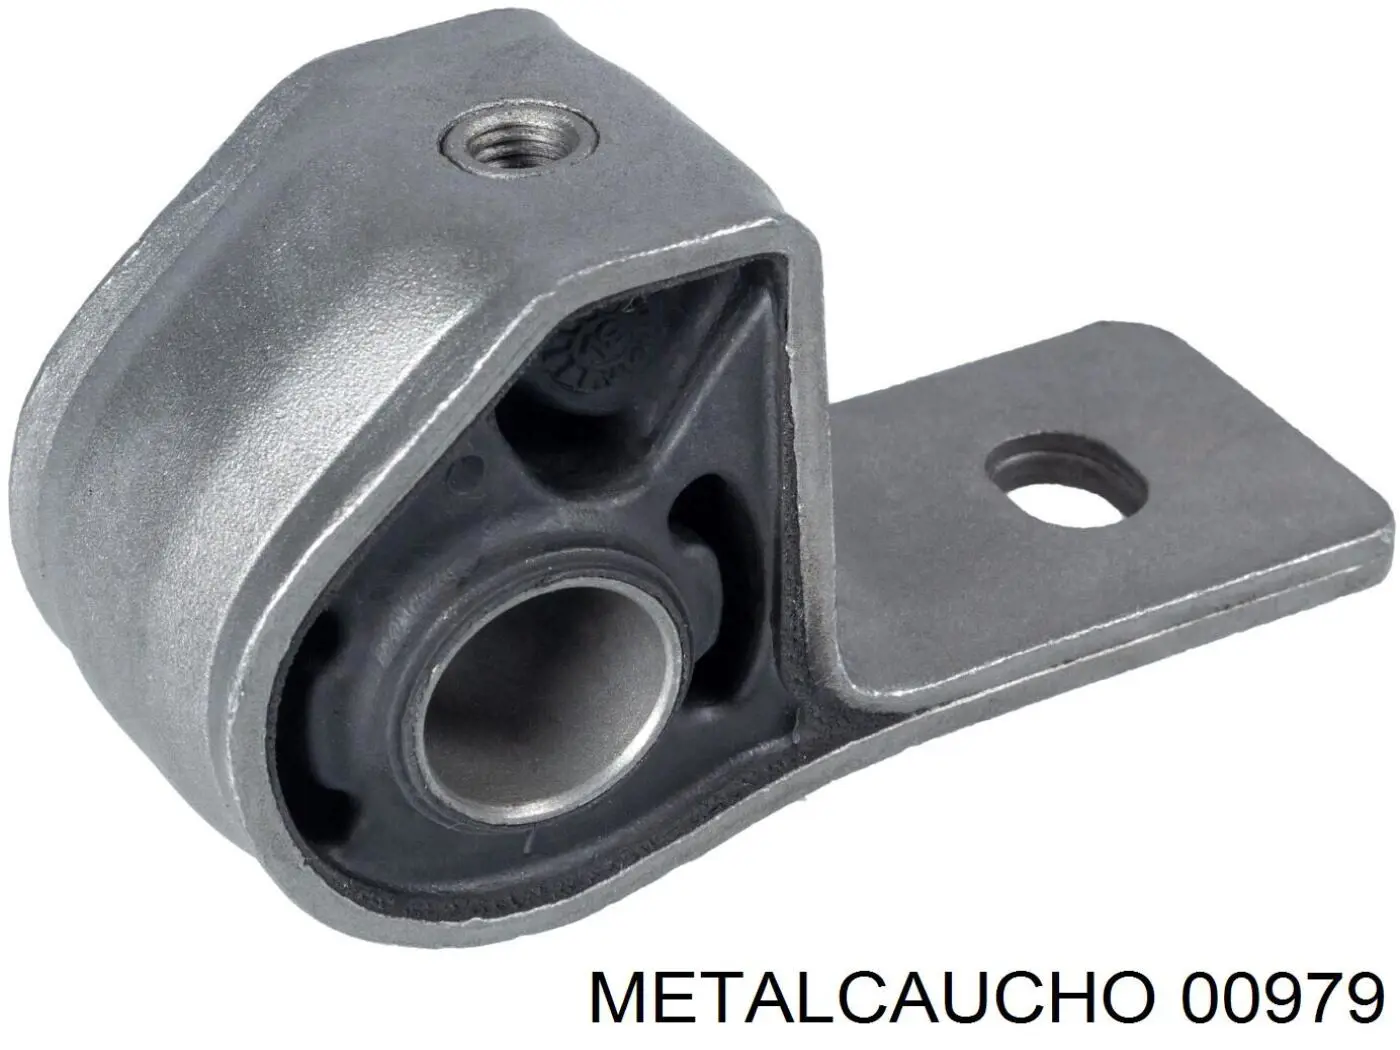 00979 Metalcaucho silentblock de suspensión delantero inferior